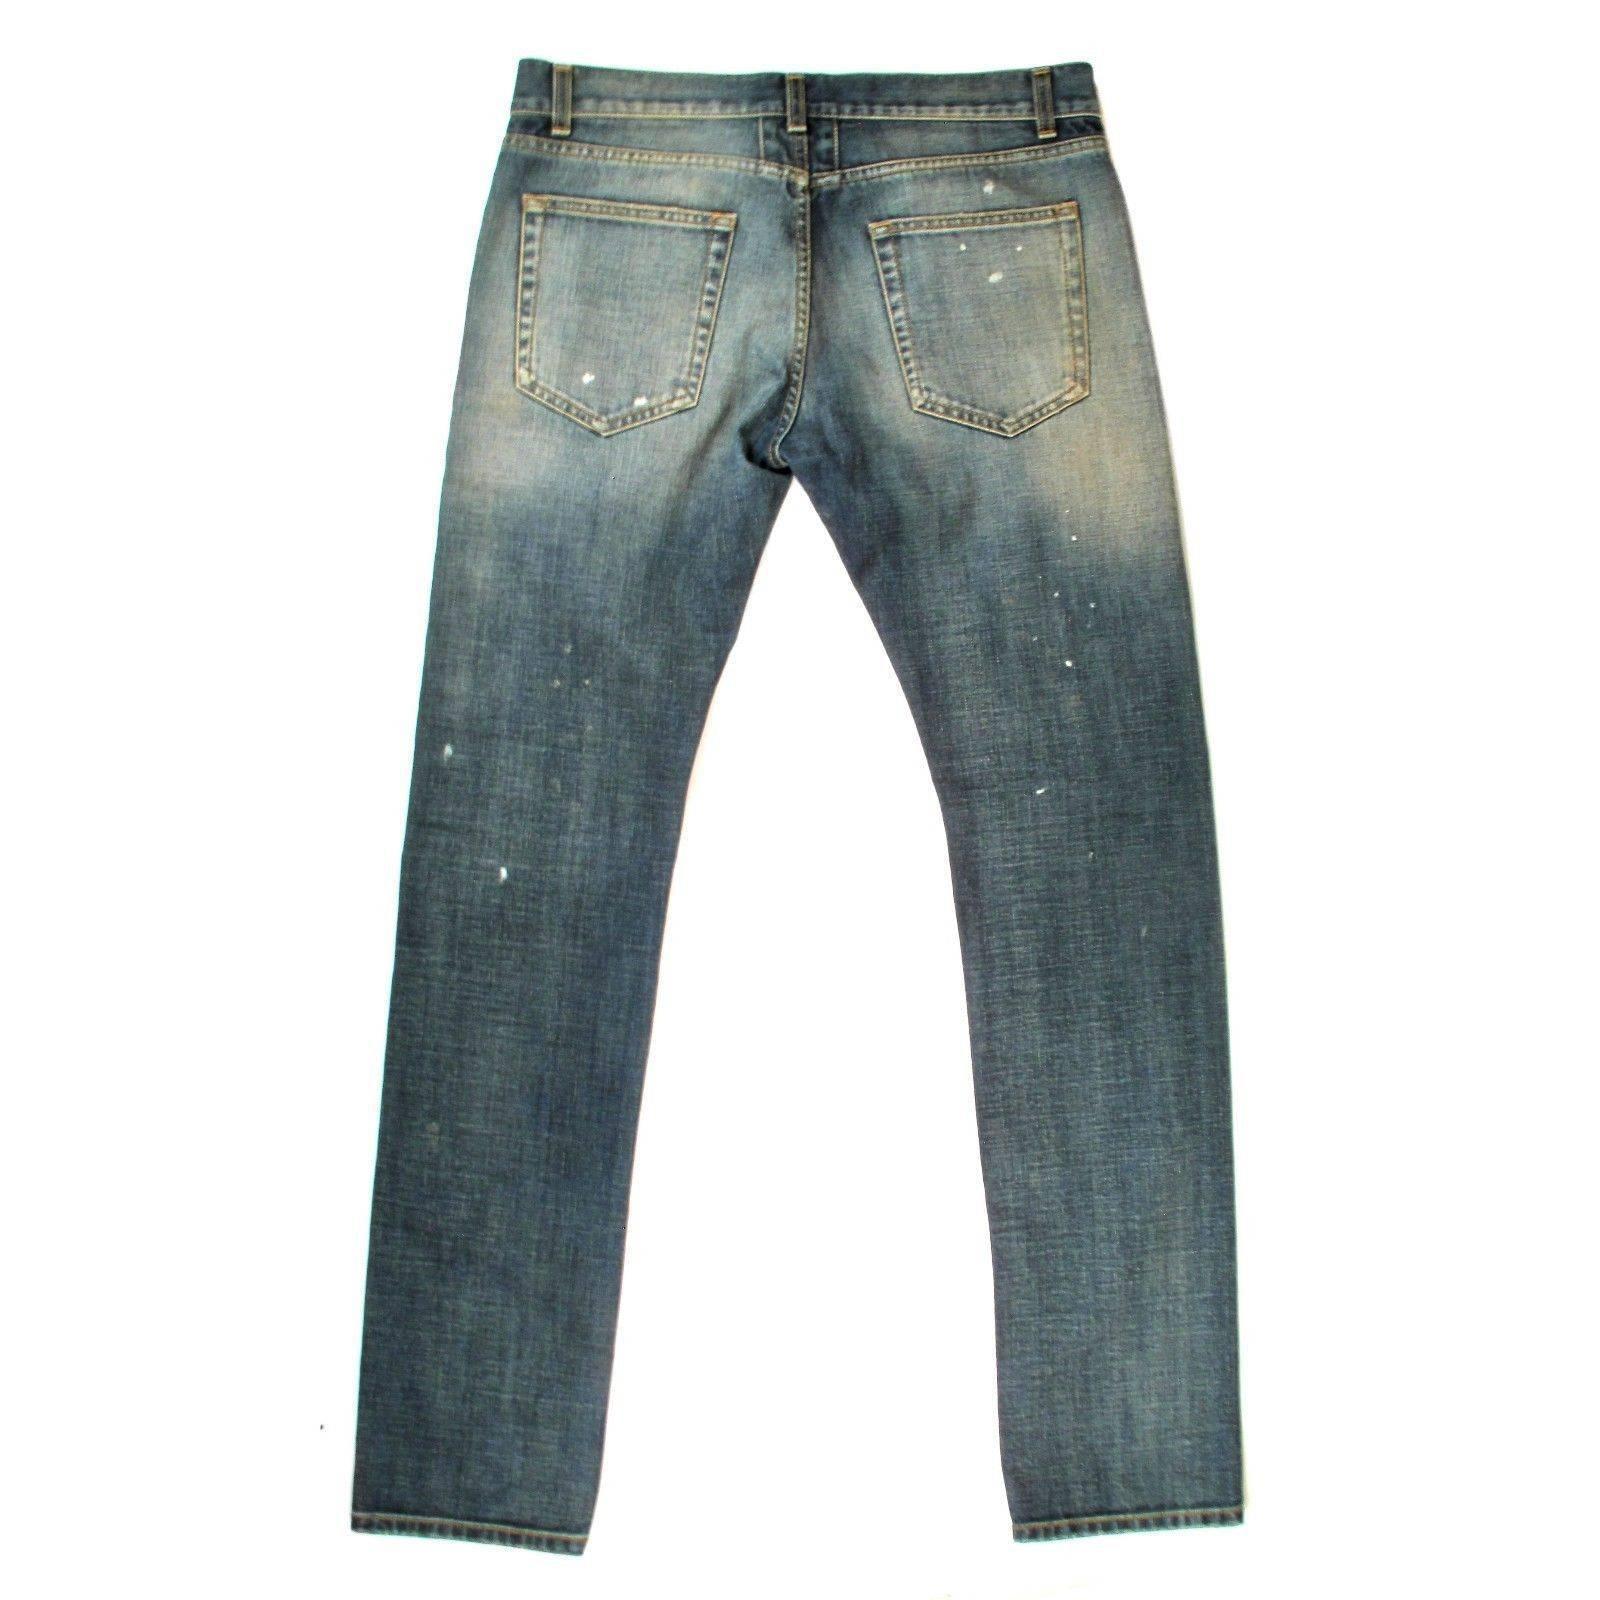 Saint Laurent - Men's Denim Jeans
 
Size: 32

Color: Medium Blue

Material: 100% Cotton

------------------------------------------------------------

Details:

- rip & paint details

- distressed dirty wash

- straight leg

-